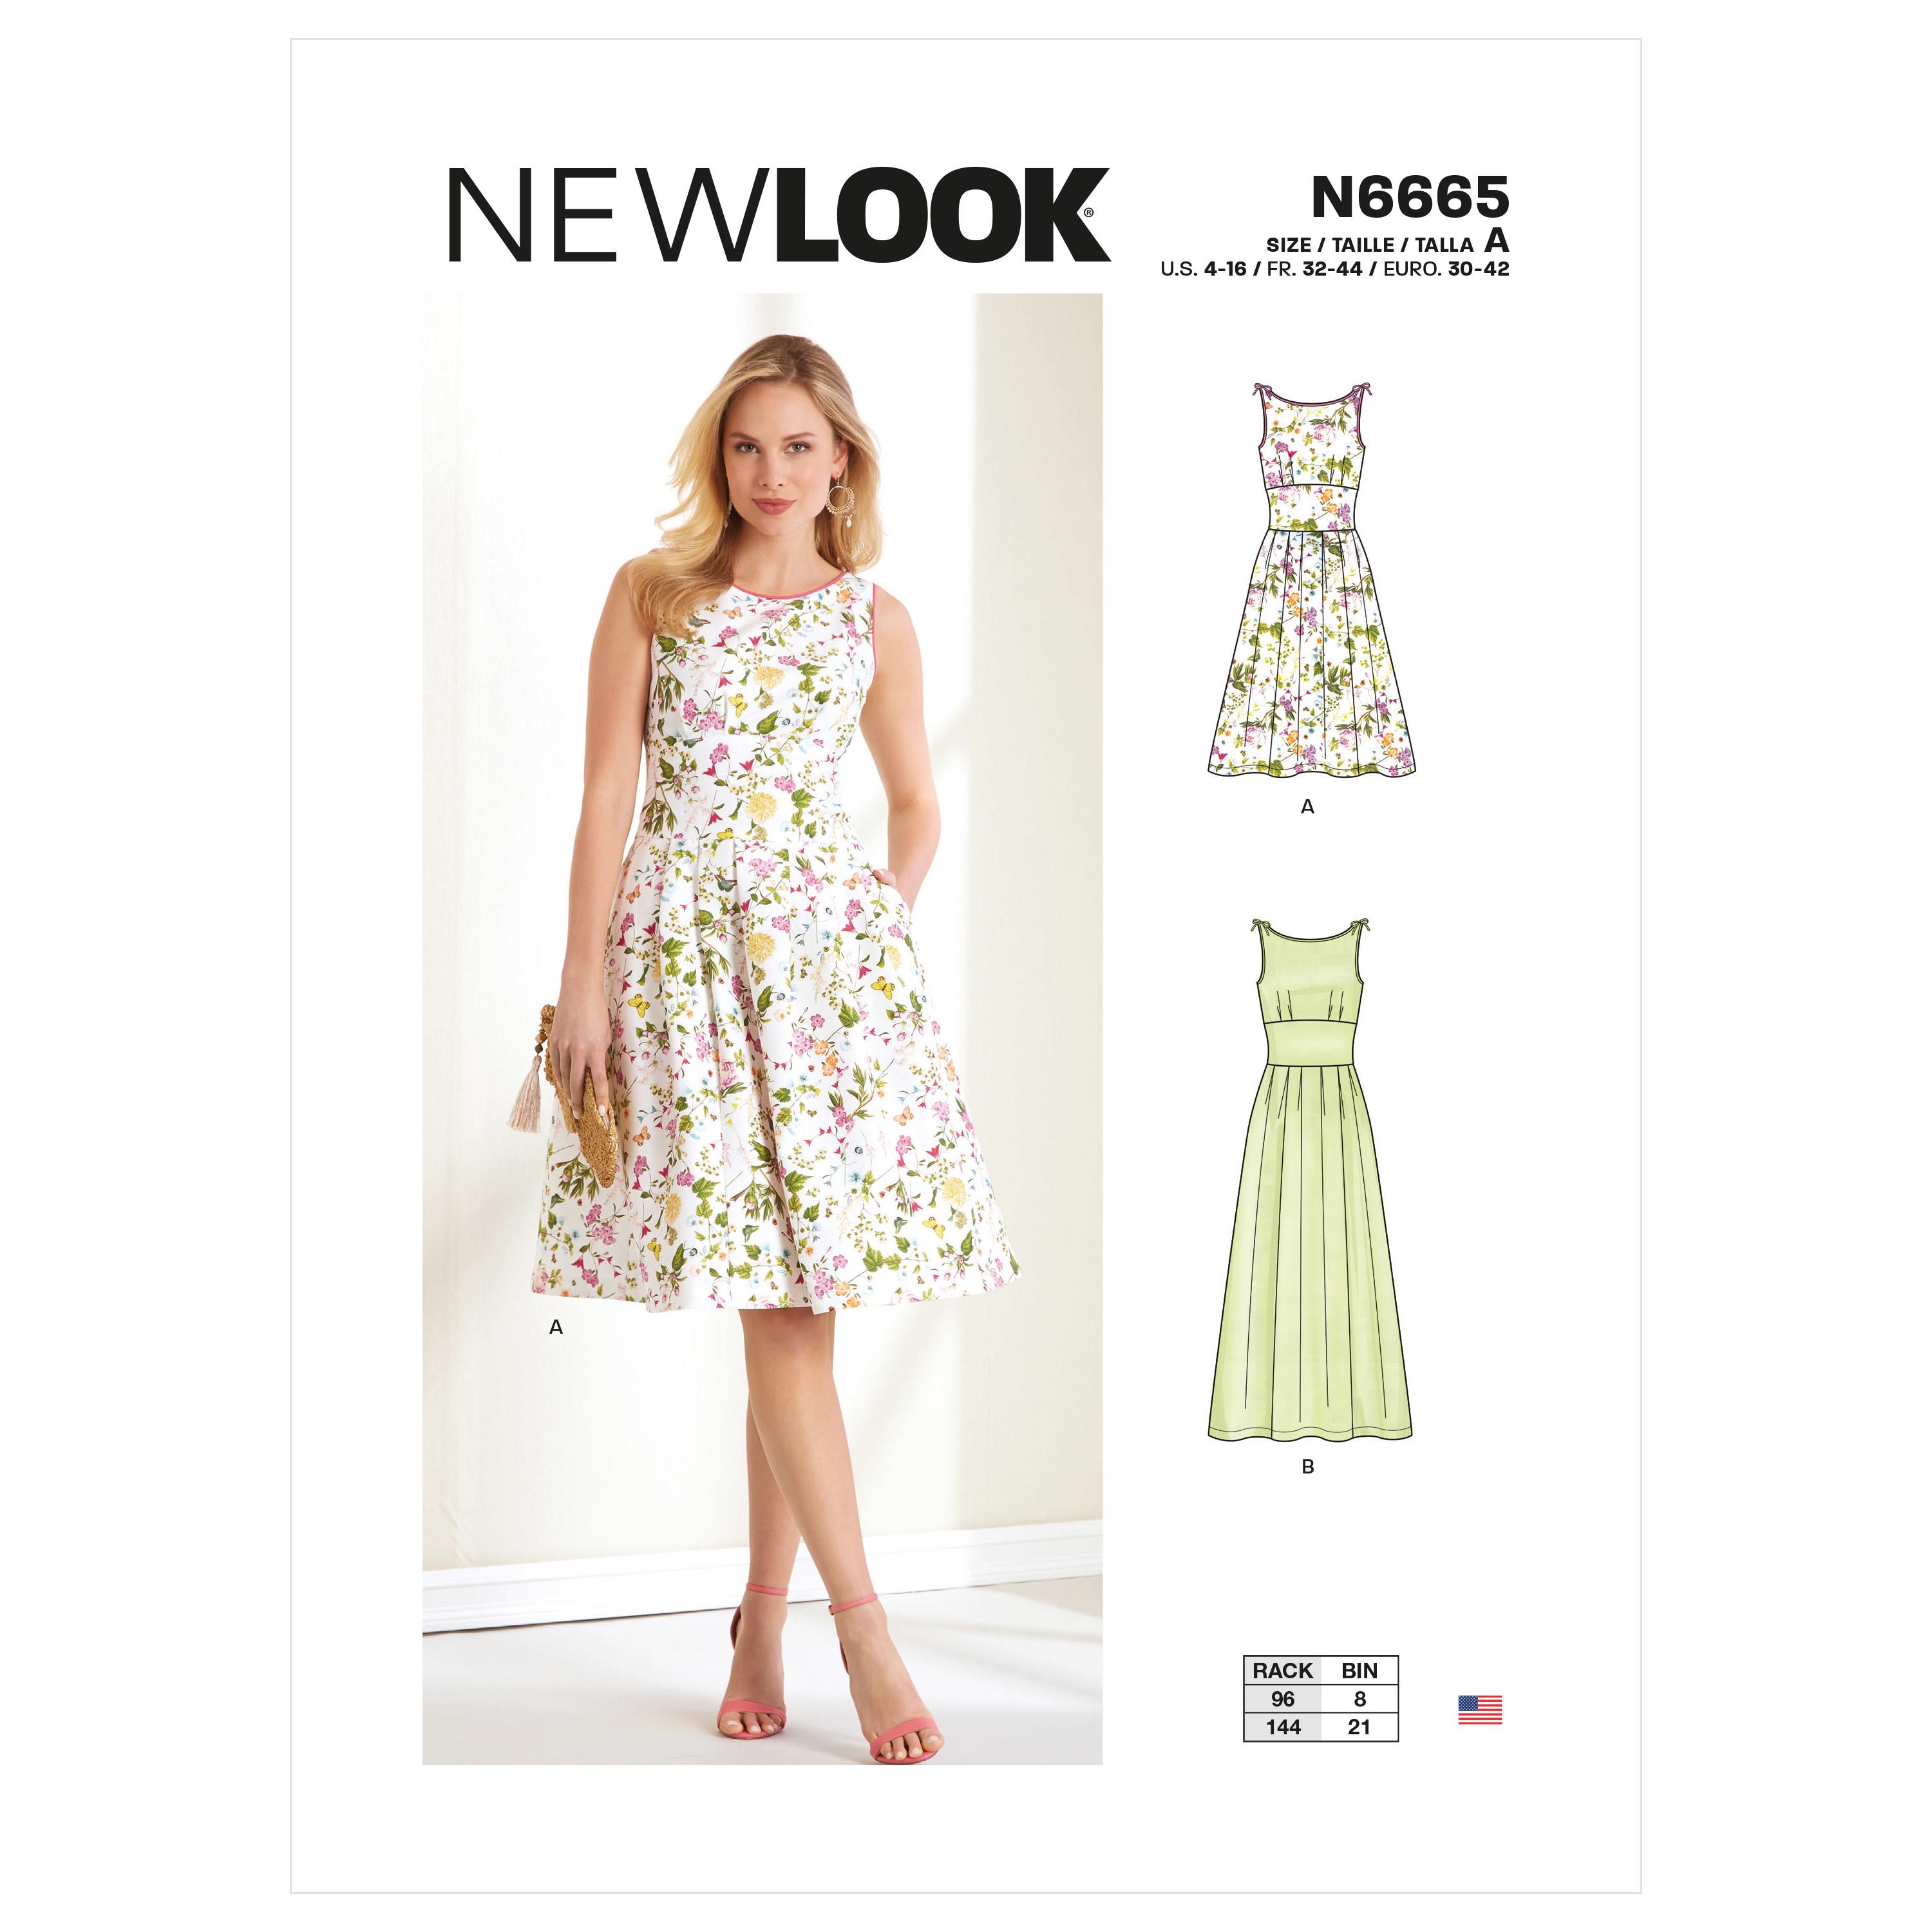 New Look Sewing Pattern N6665 Misses' Dress